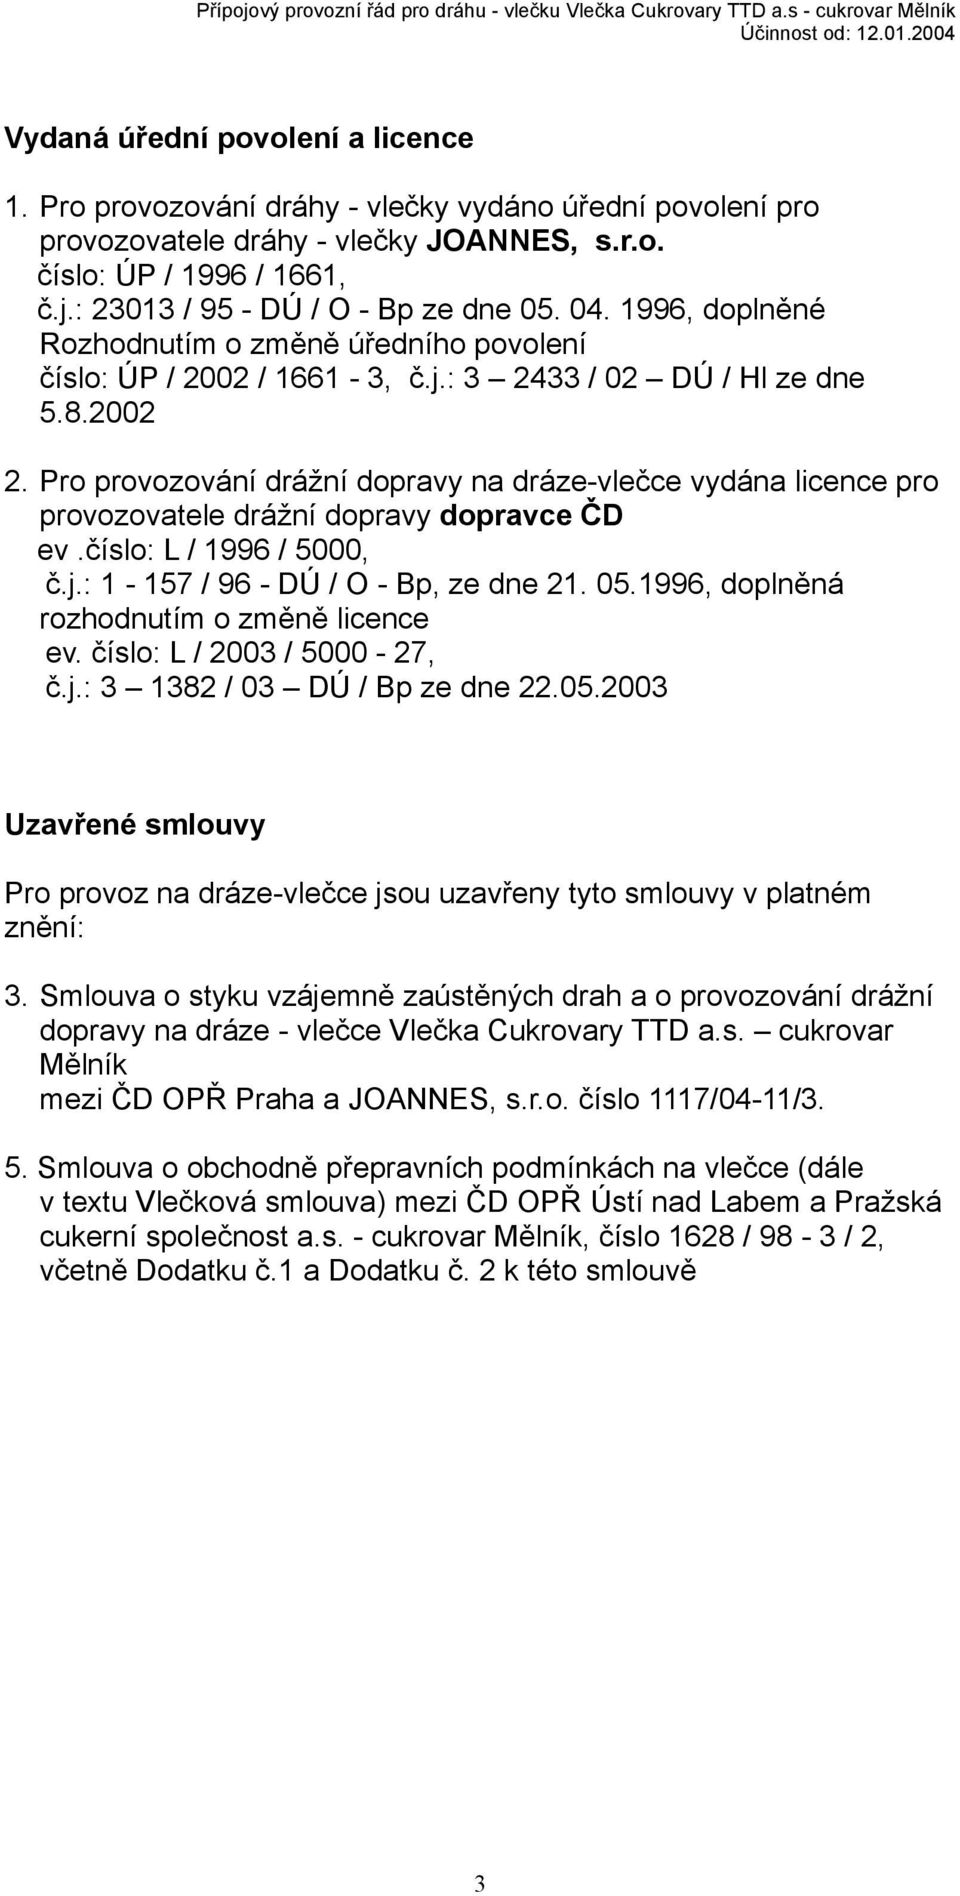 Pro provozování drážní dopravy na dráze-vlečce vydána licence pro provozovatele drážní dopravy dopravce ČD ev.číslo: L / 1996 / 5000, č.j.: 1-157 / 96 - DÚ / O - Bp, ze dne 21. 05.